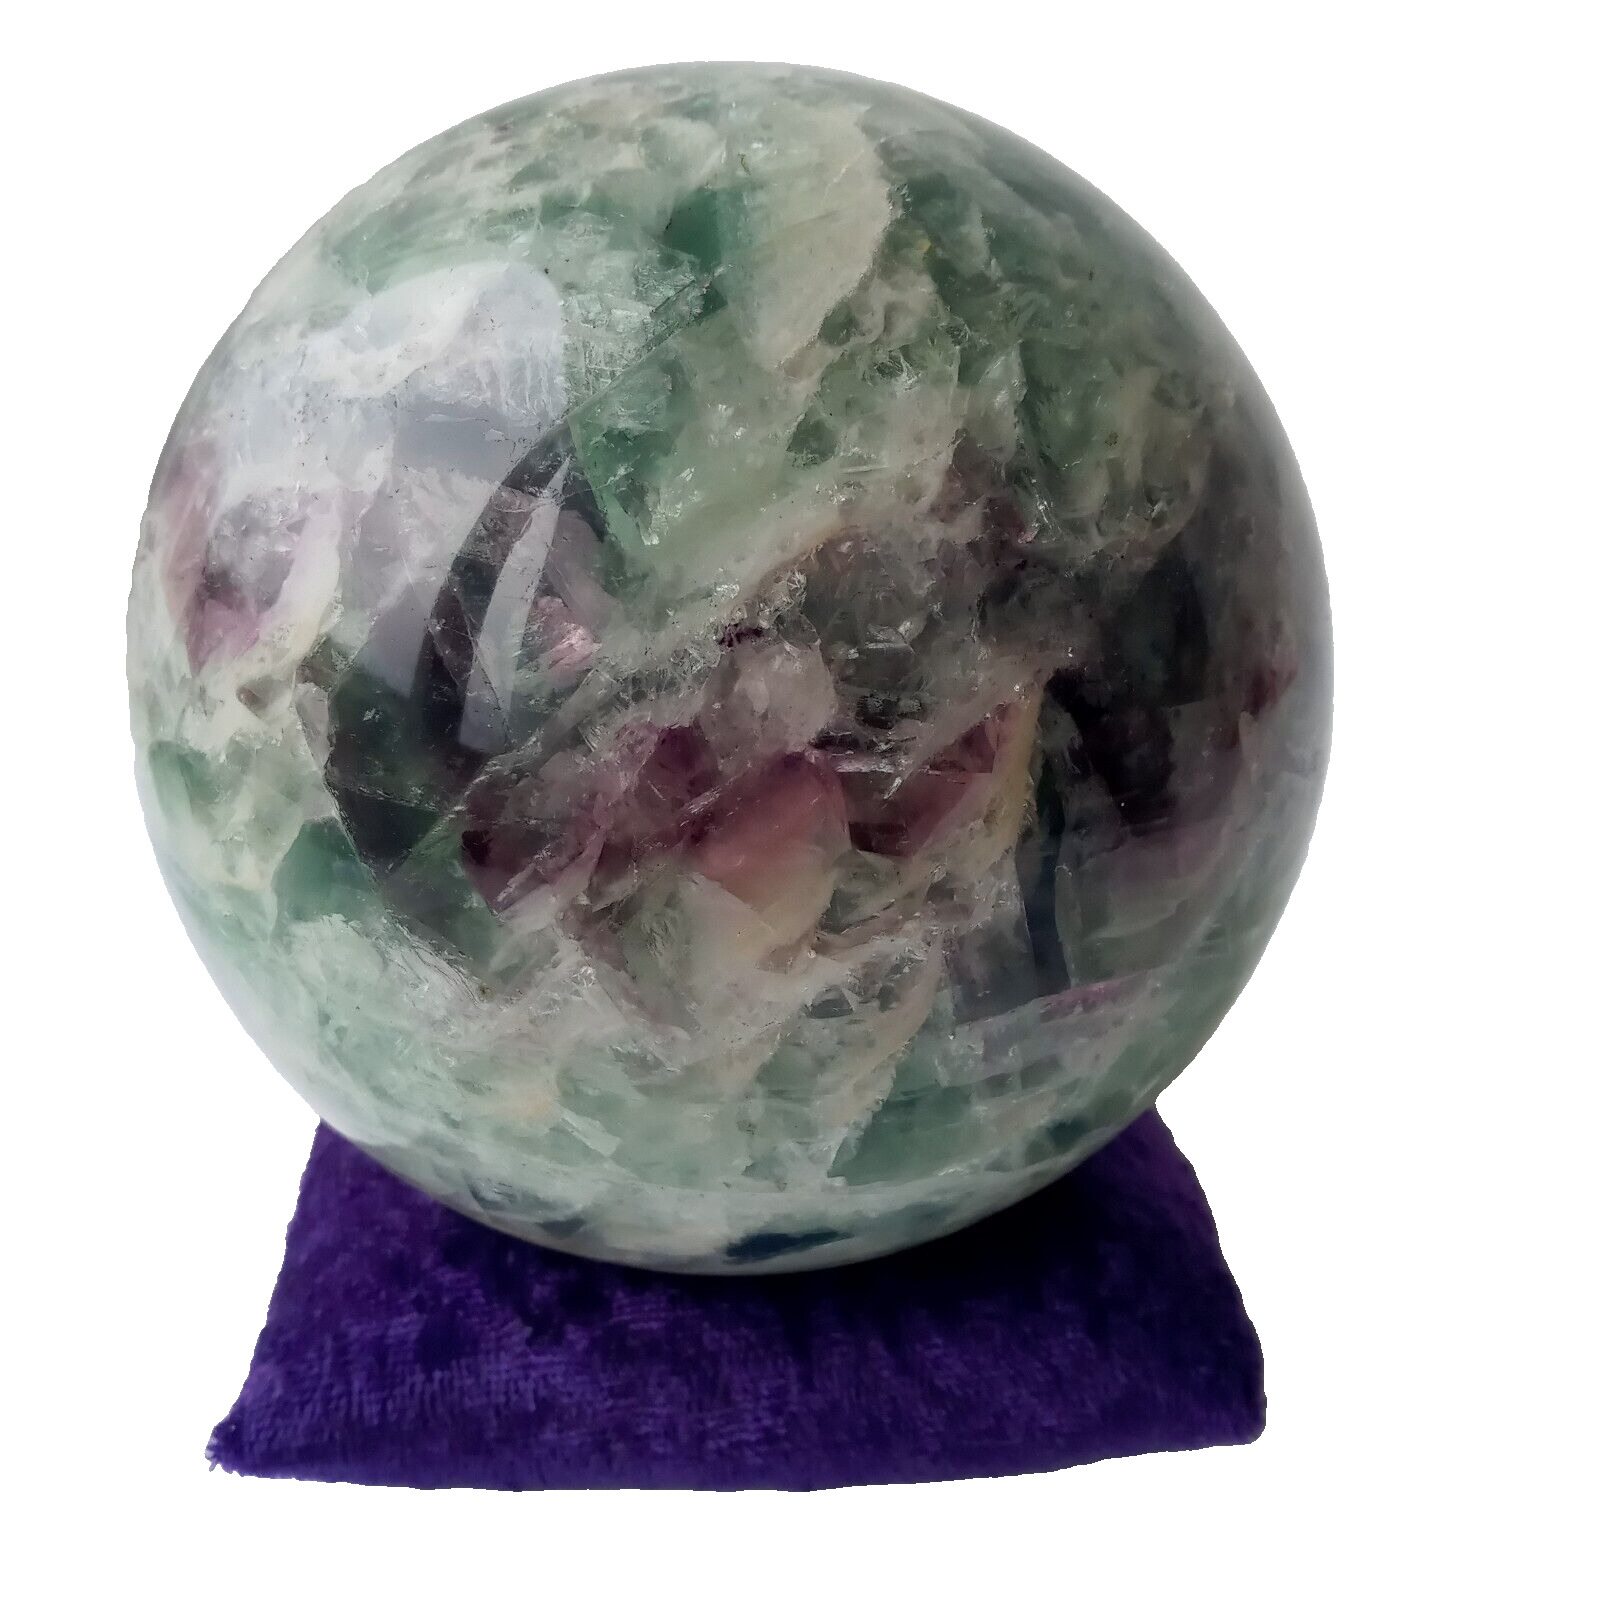 5 lb 14 oz Large Purple Green Fluorite Crystal Ball Healing Spiritual Cleansing